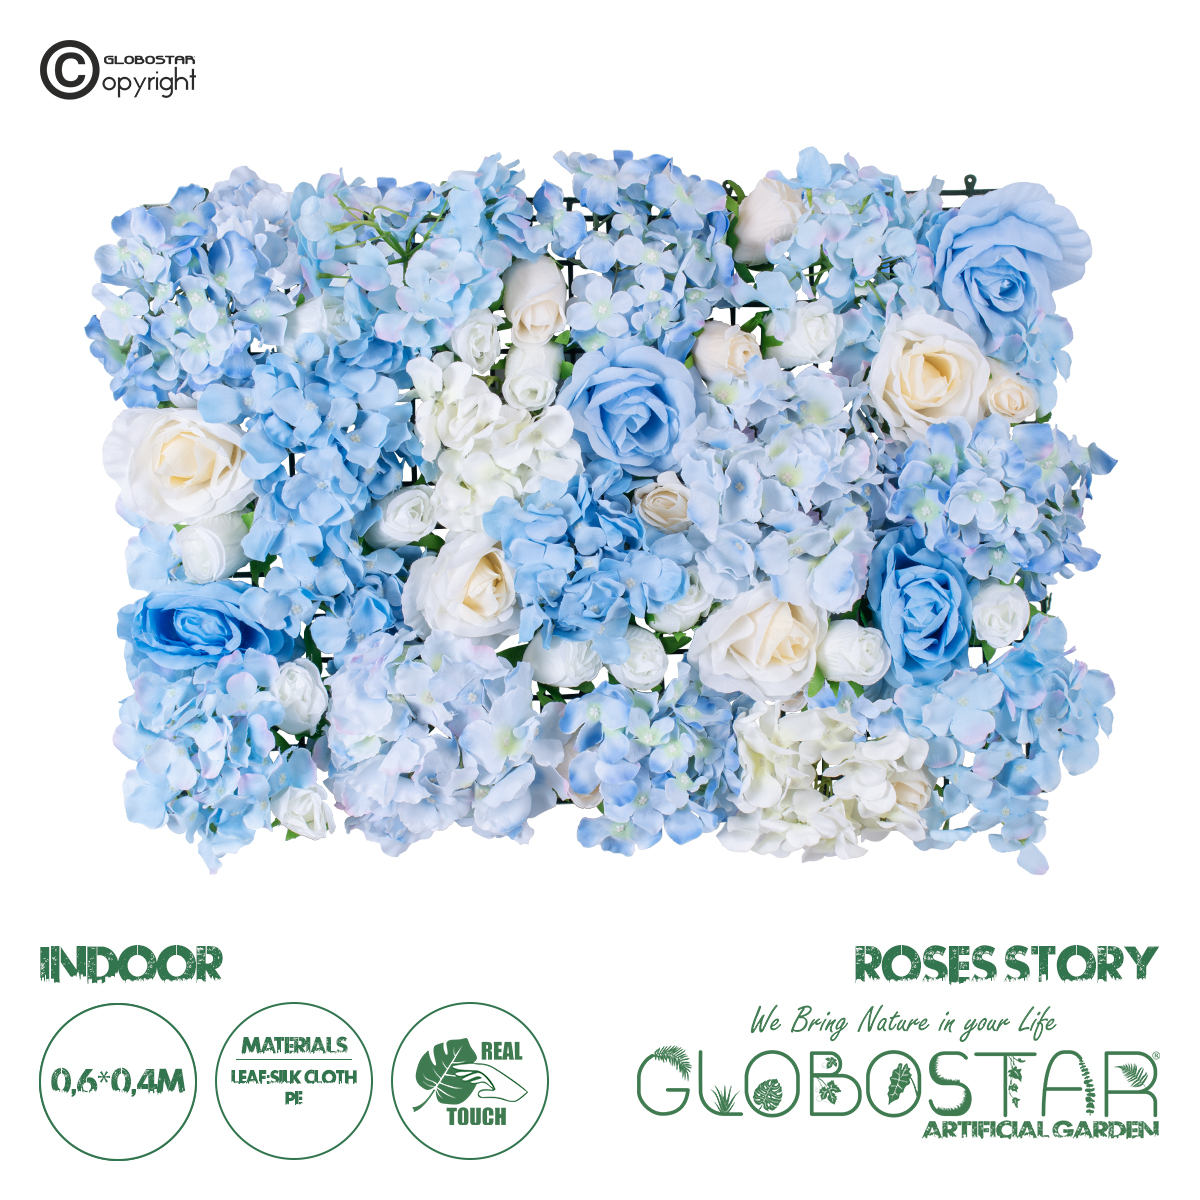 GloboStar® Artificial Garden ROSES STORY 20353 Τεχνητό Διακοσμητικό Πάνελ Λουλουδιών – Κάθετος Κήπος σύνθεση Μπλε & Μπεζ Τριαντάφυλλα Μ40 x Π60 x Υ10cm